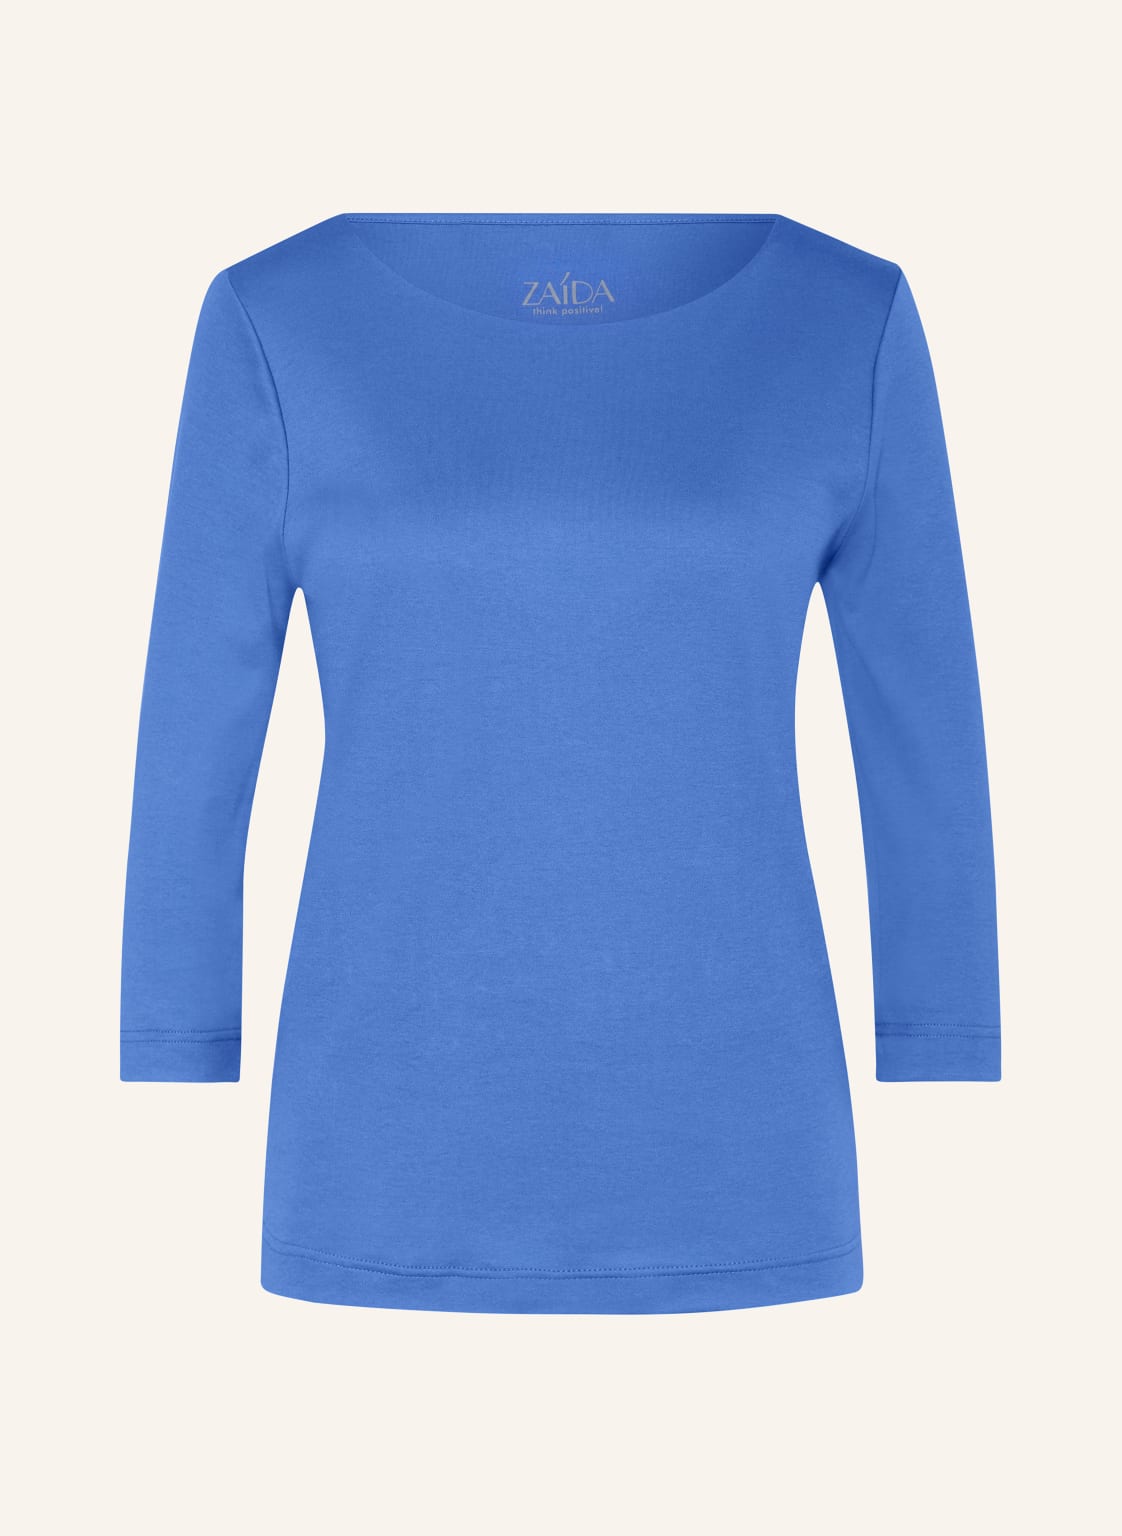 Zaída Shirt Mit 3/4-Arm blau von ZAÍDA